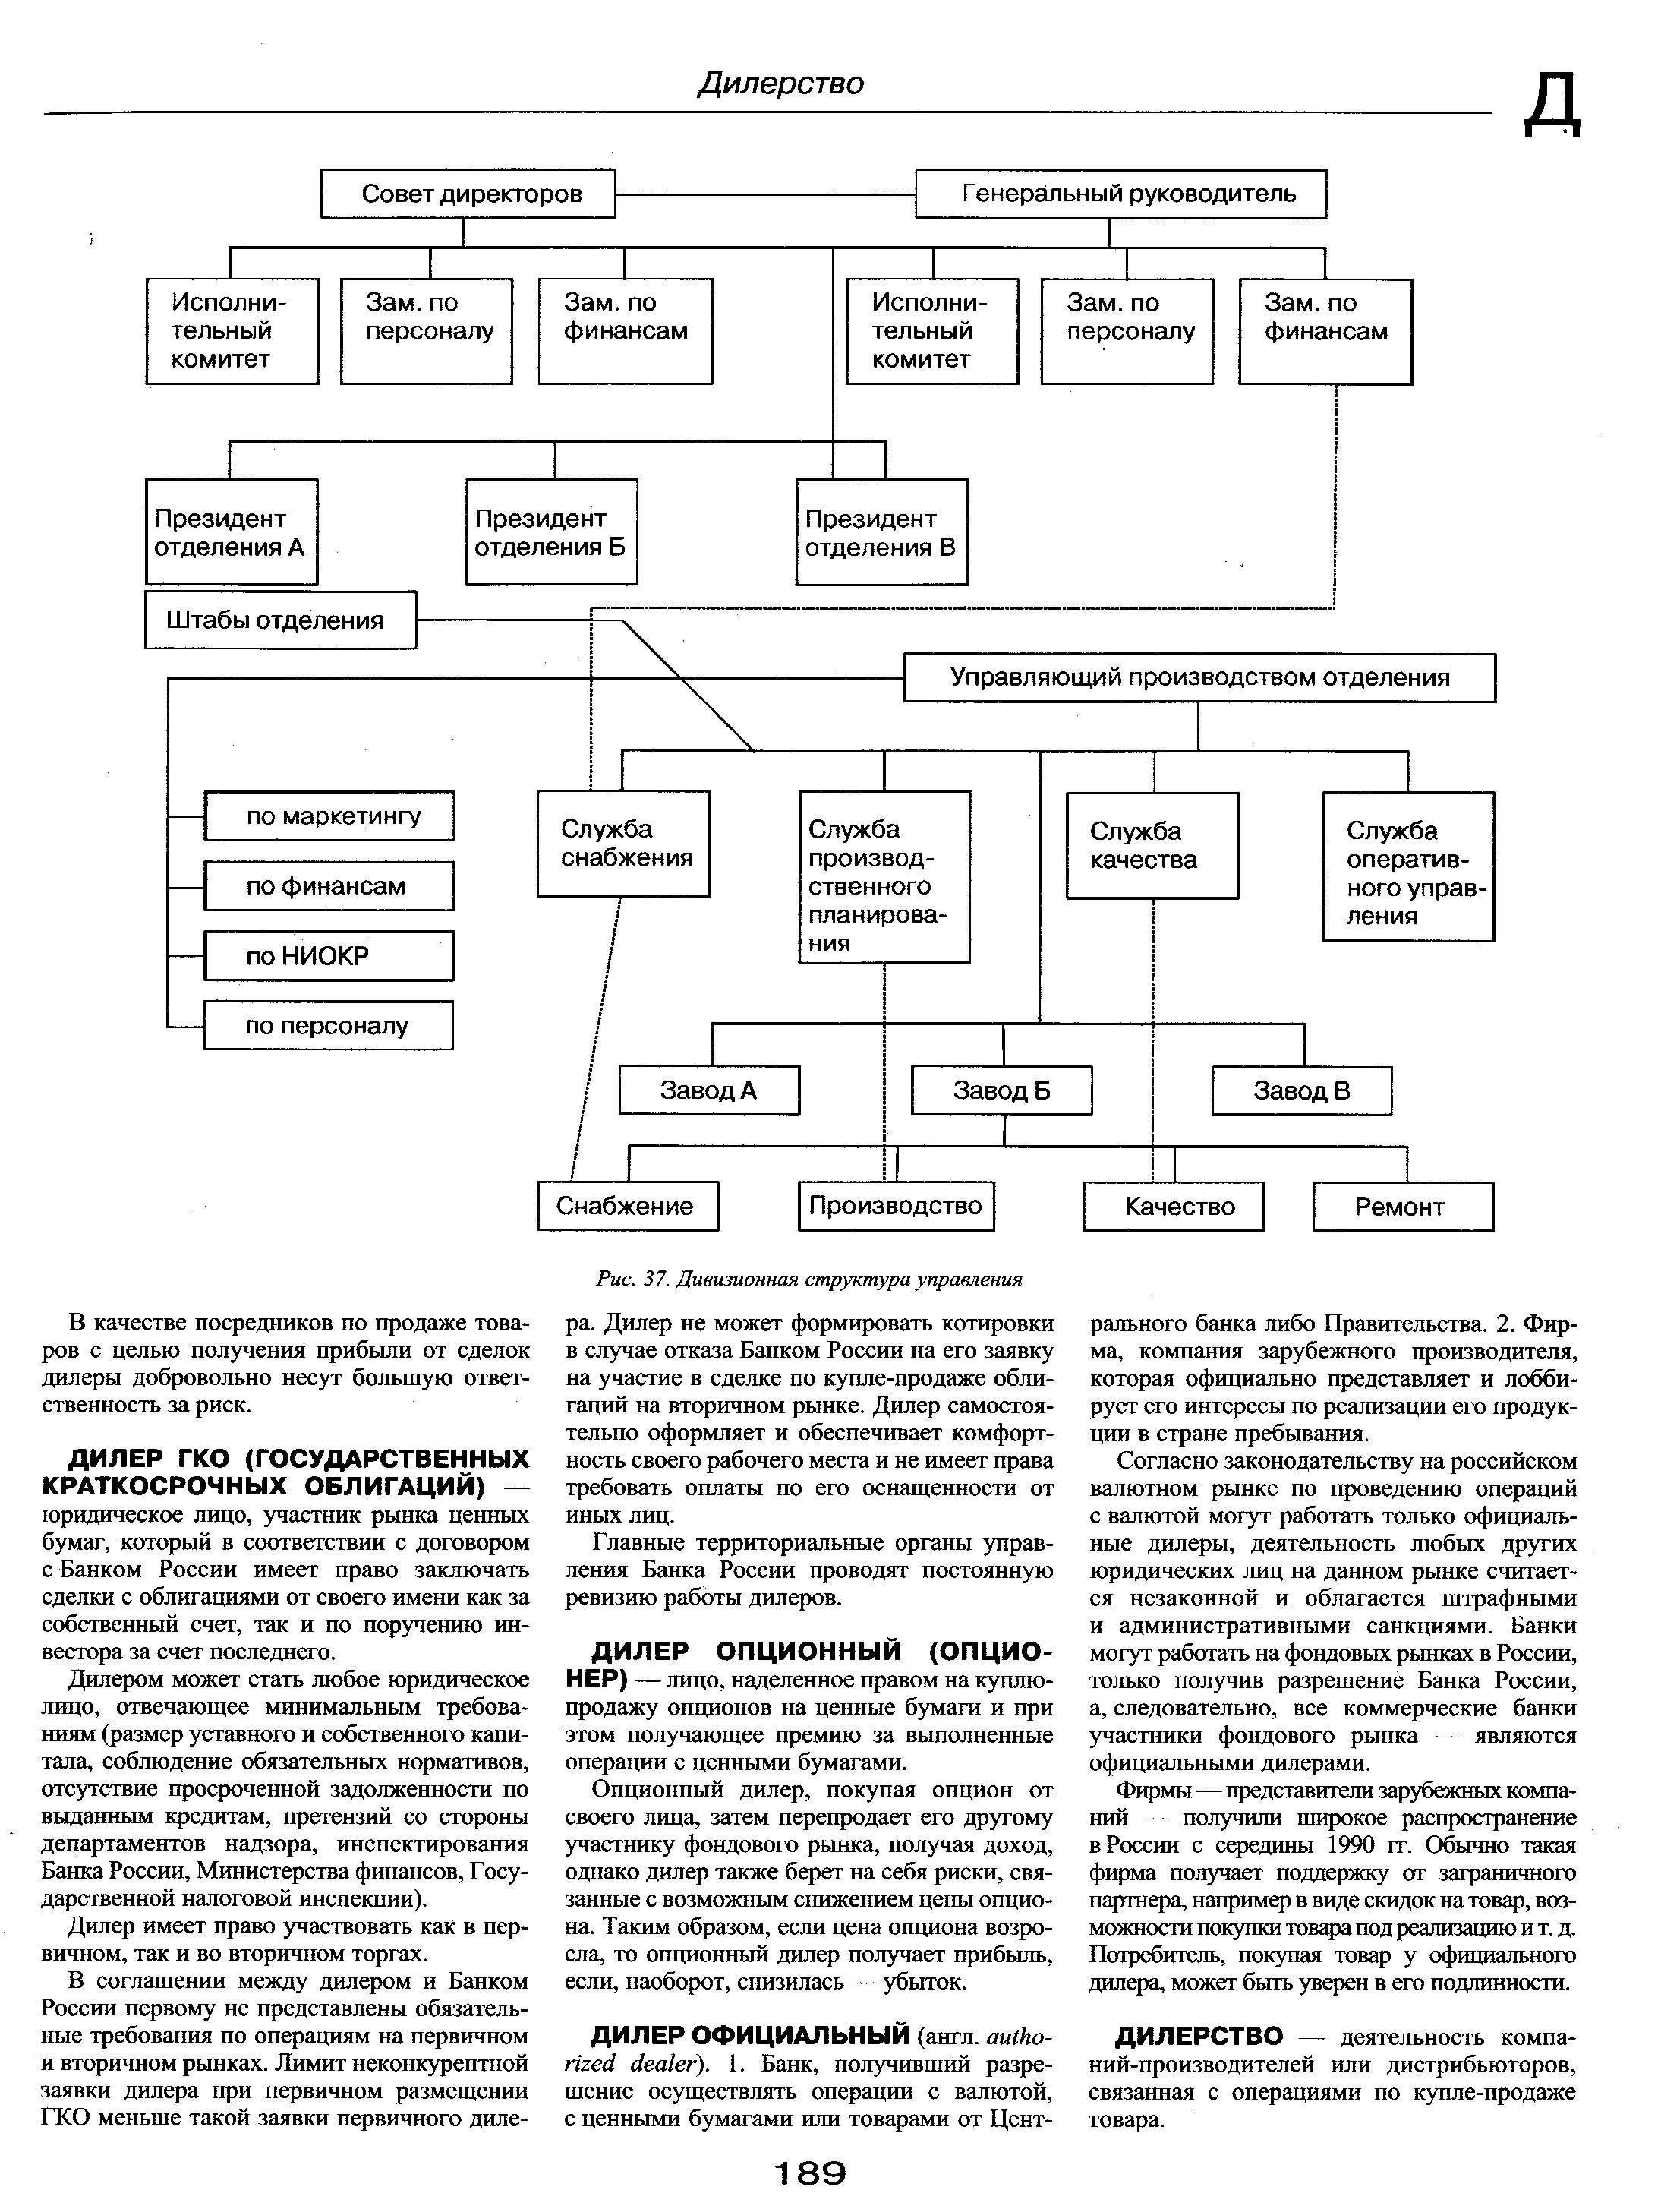 Рис. 37. Дивизионная структура управления
